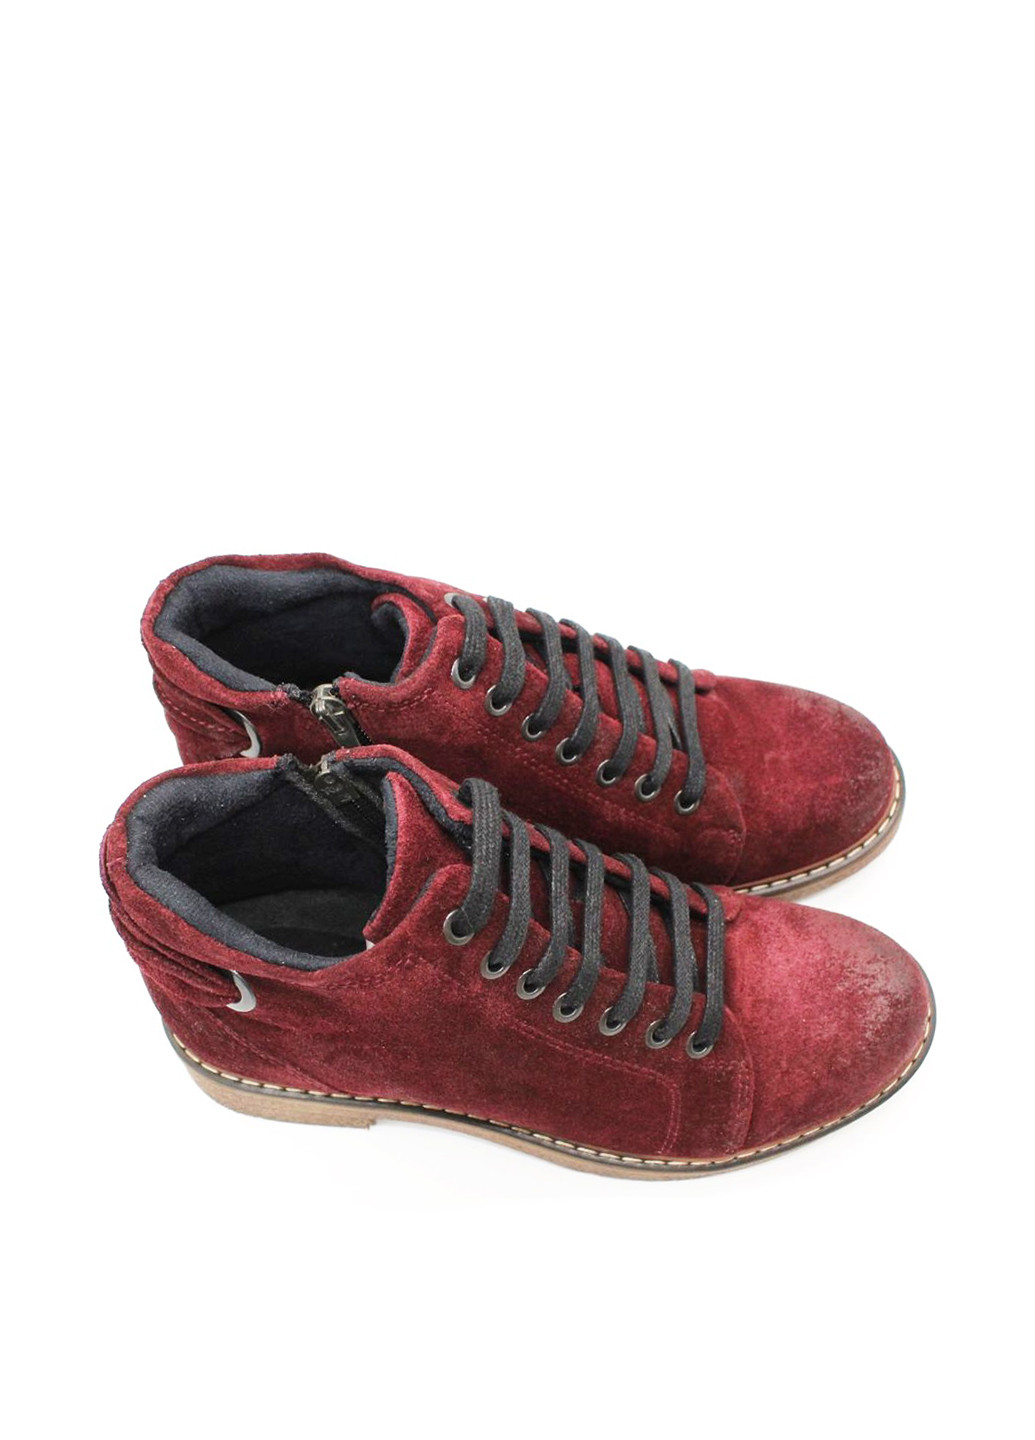 Осенние ботинки Luciano Bellini без декора из натуральной замши